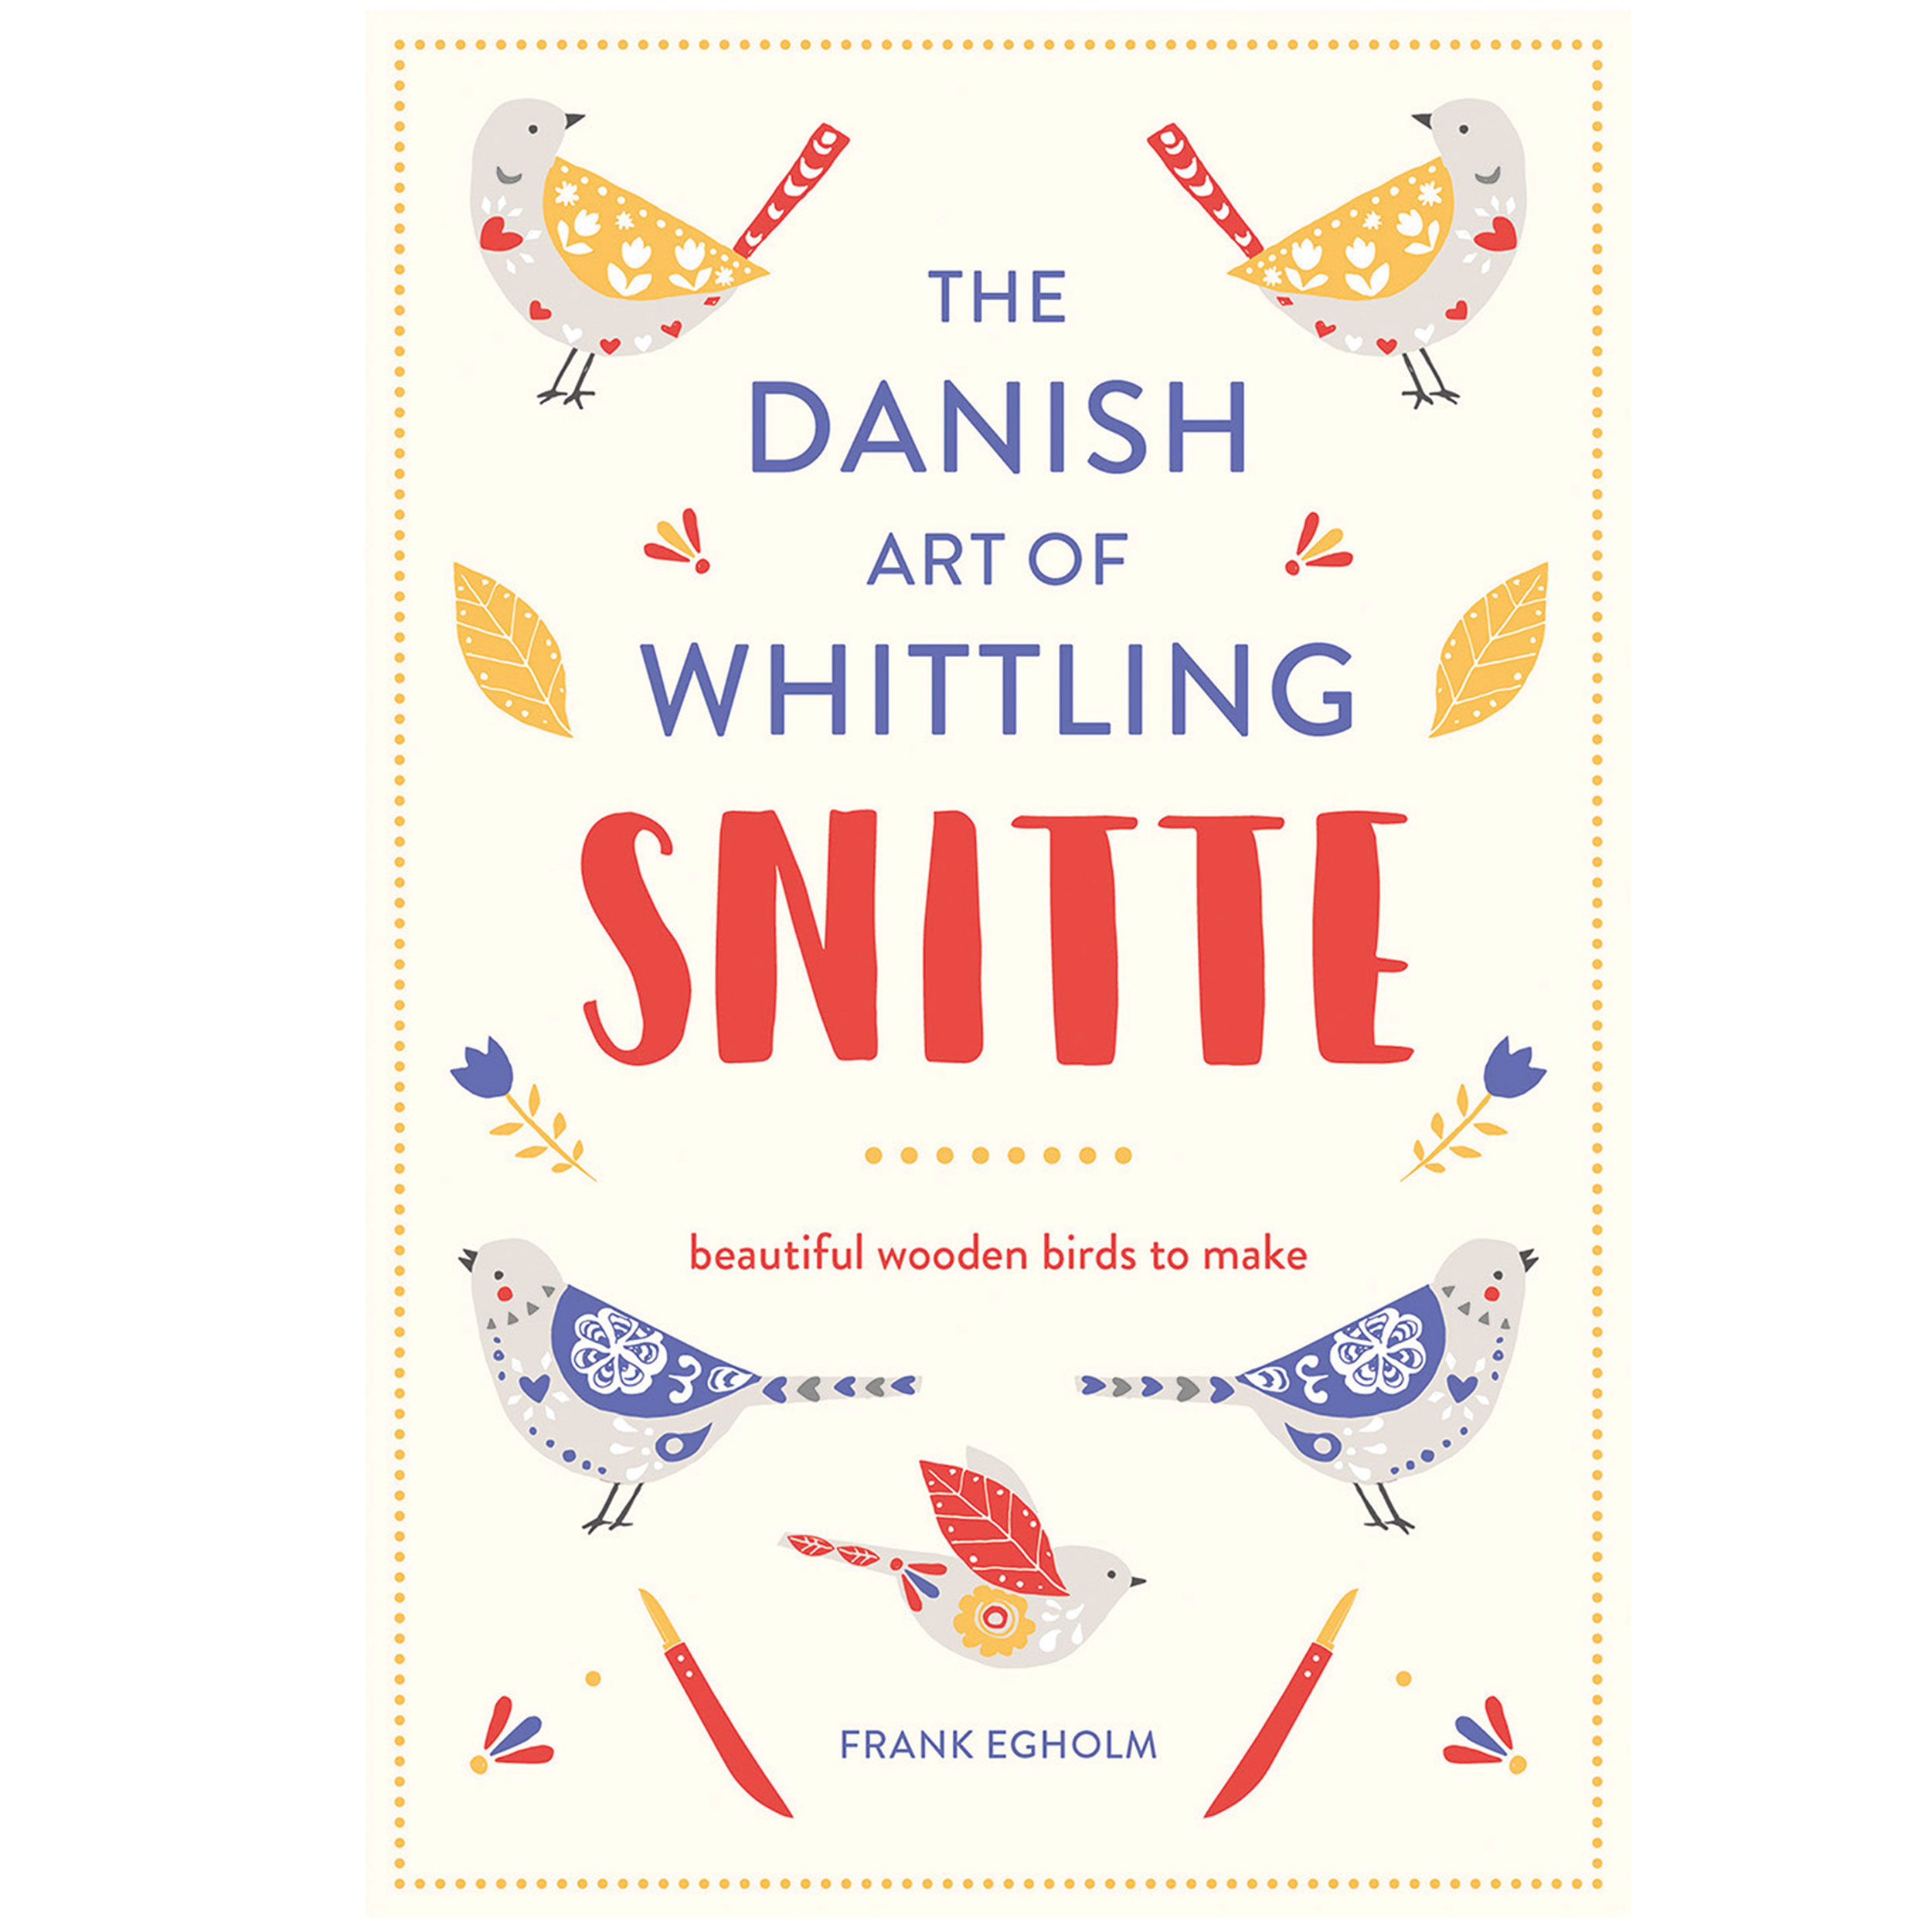 The Danish Art Of Whittling Snitte